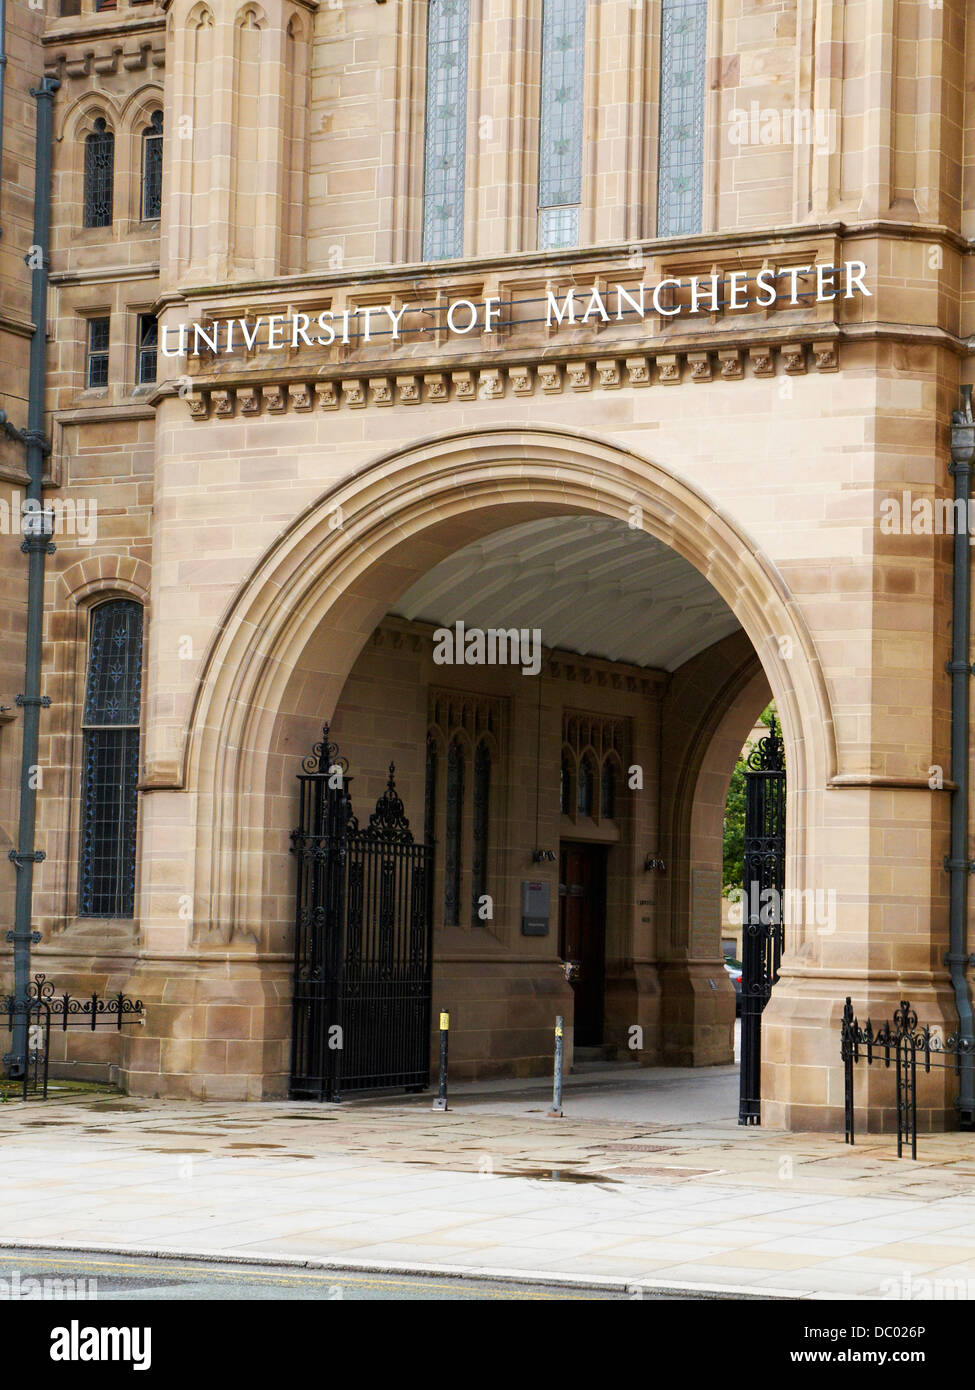 Entrance to University of Manchester UK Stock Photo